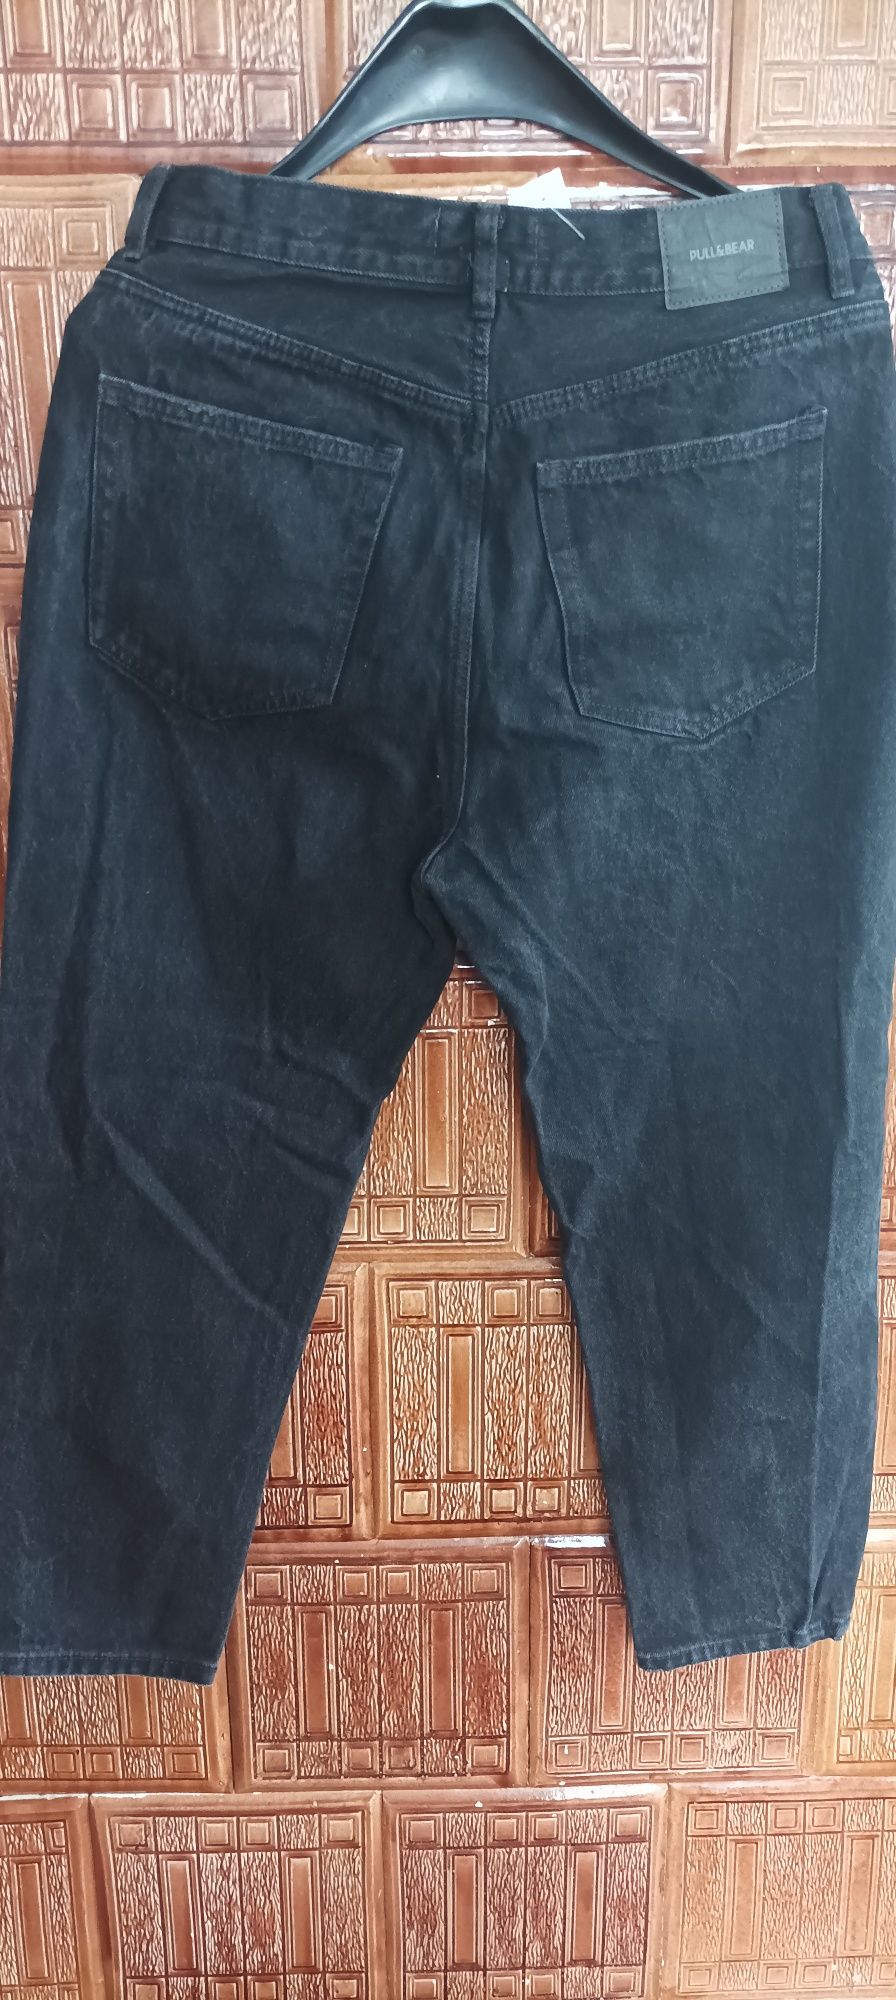 Spodnie jeansowe czarne Petite. Rozm 42 Pull&Bear.